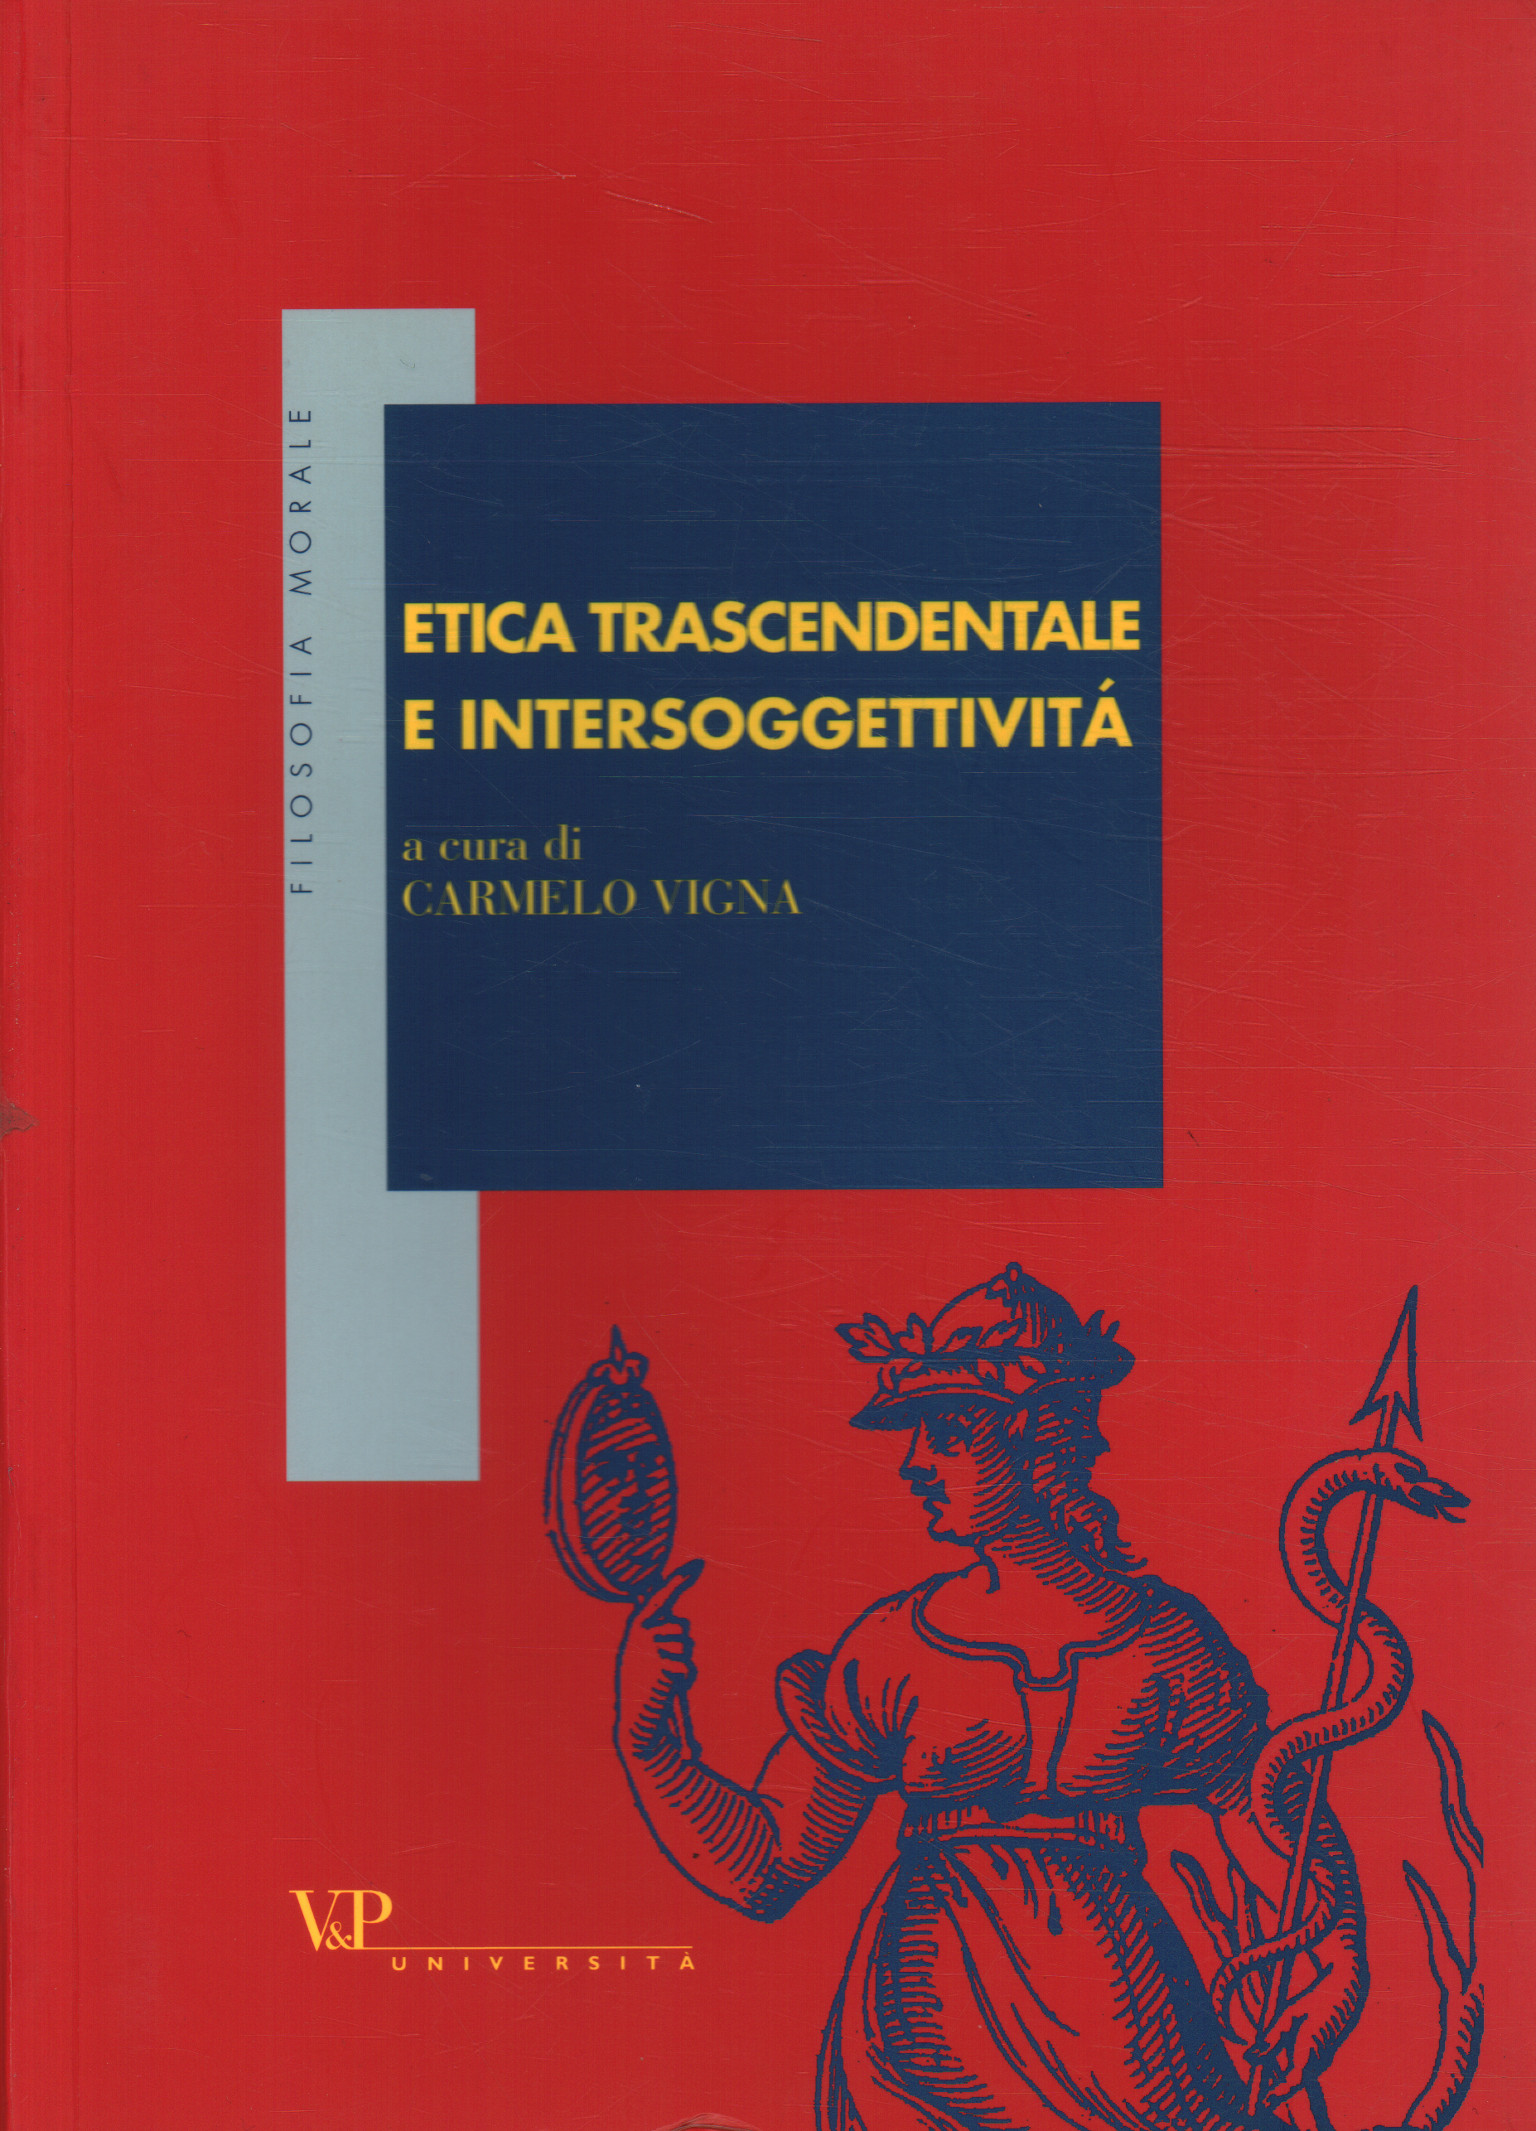 Ética trascendental e intersubjetividad, Ética trascendental e intersubjetividad, Ética trascendental e intersubjetividad, Ética trascendental e intersubjetividad